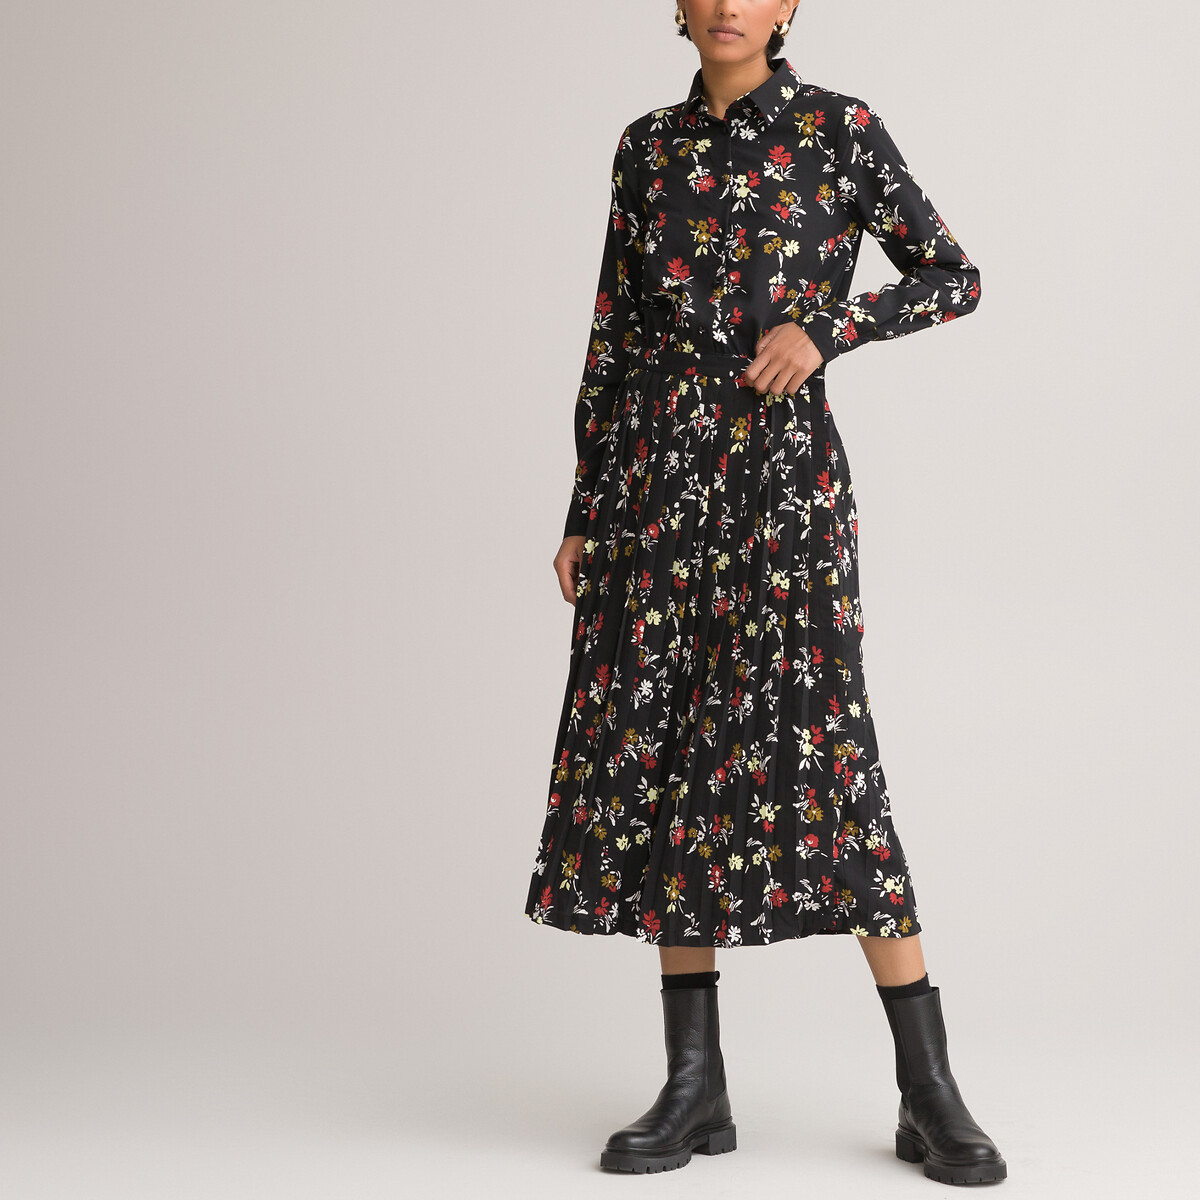 Платье-рубашка LaRedoute С низом с плиссировкой и цветочным принтом 42 черный, размер 42 - фото 1